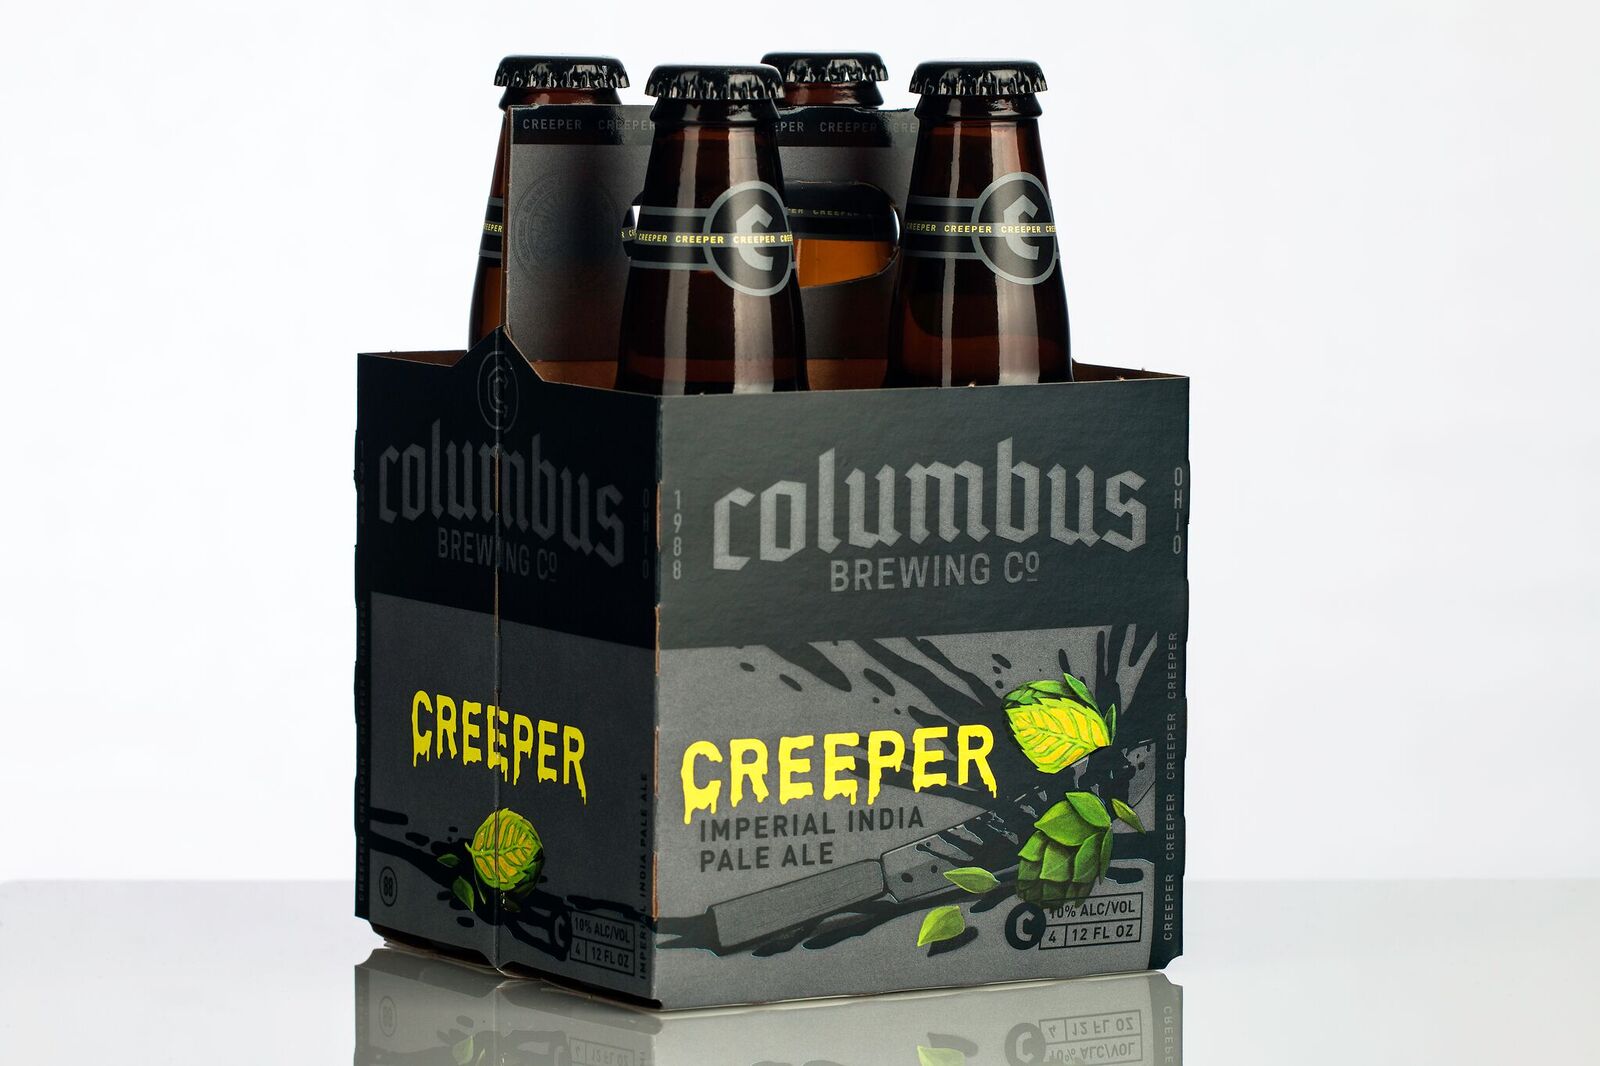 images/beer/IPA BEER/Columbus Creeper-IPA.jpg